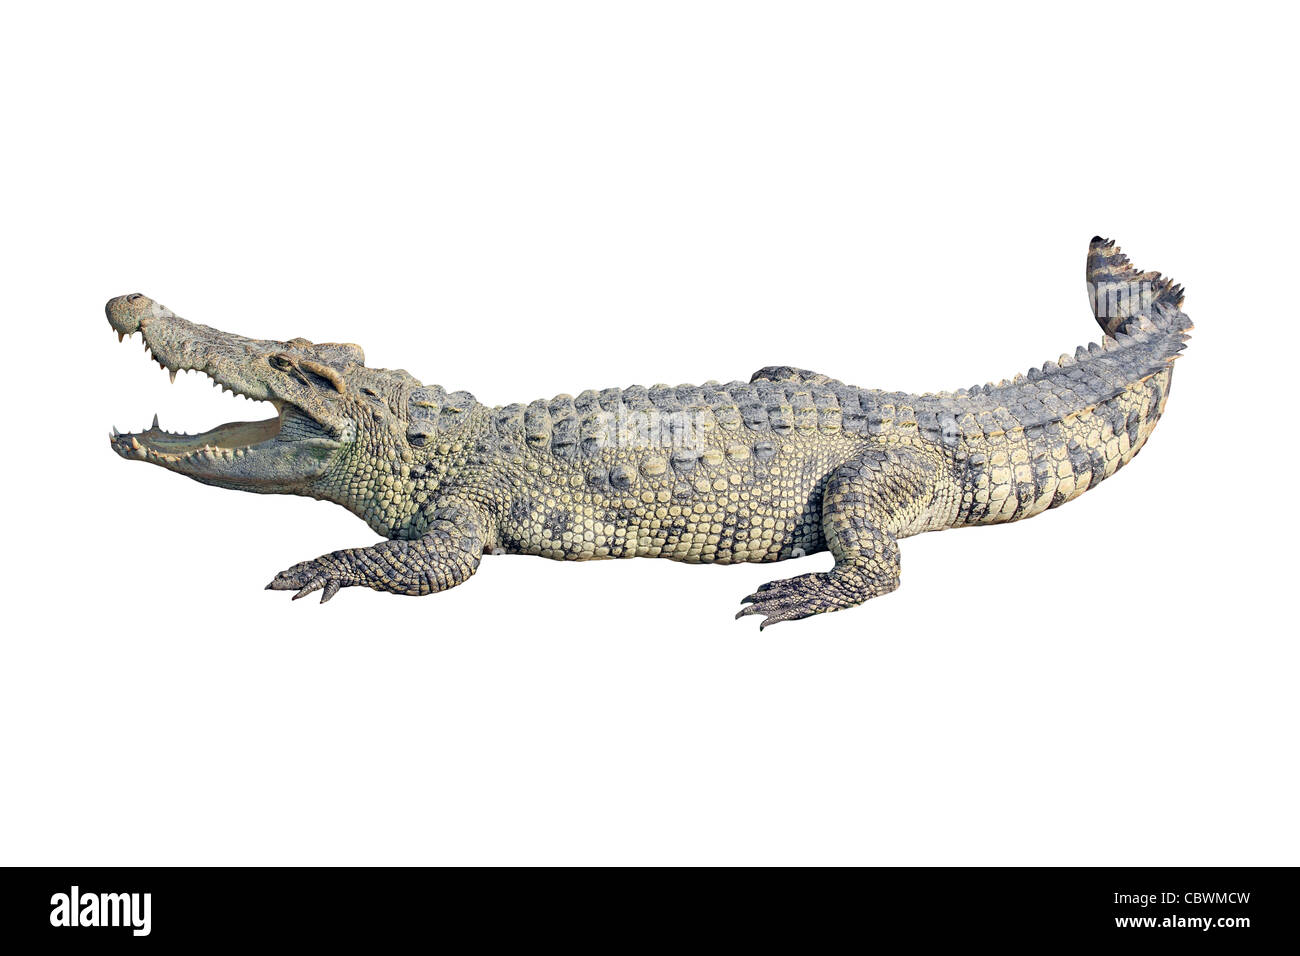 crocodile on white background Stock Photo